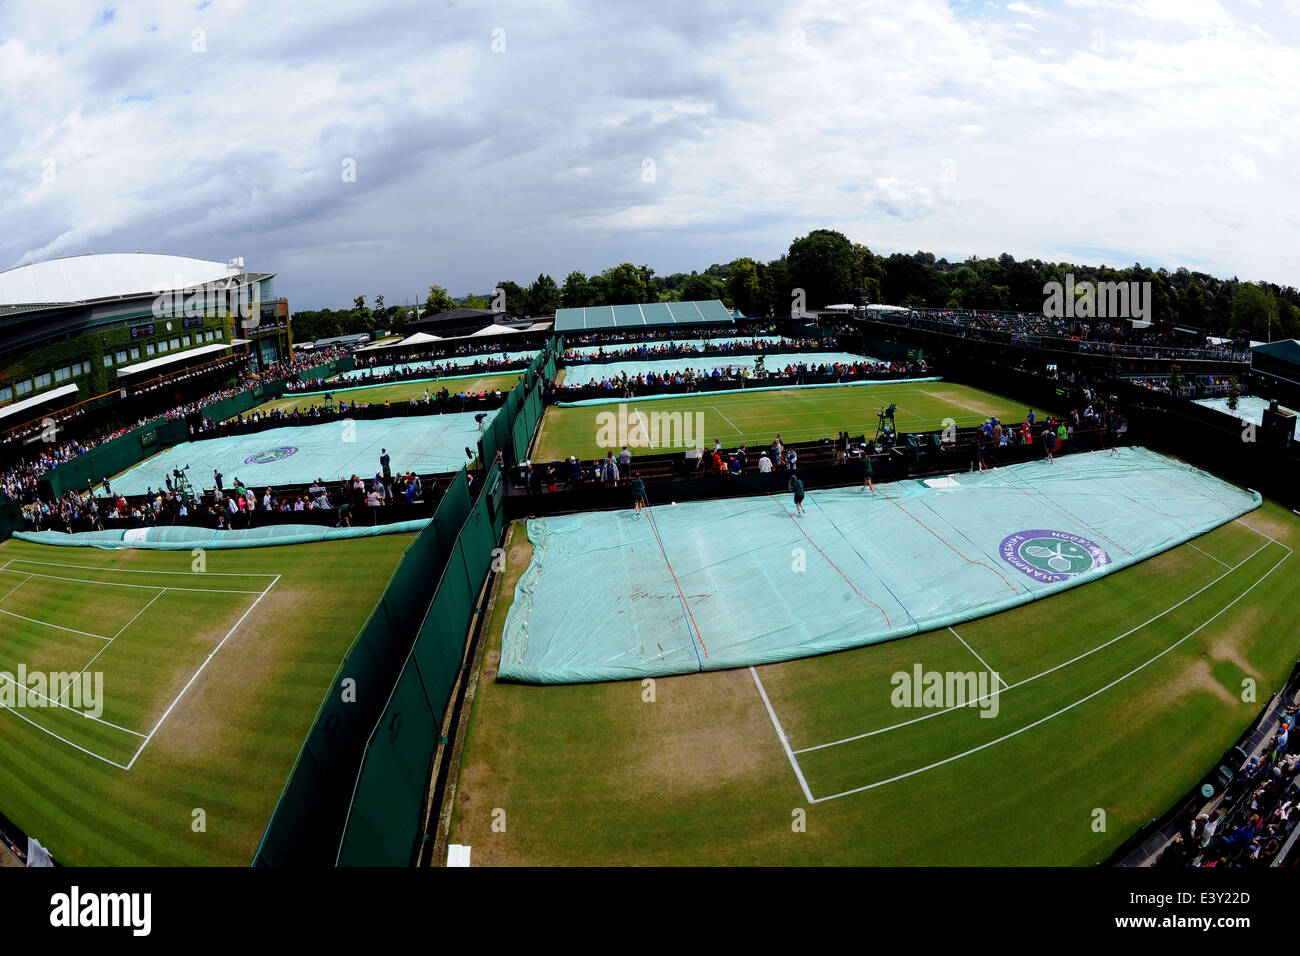 28.06.2014. Wimbledon, Londres, Inglaterra, el día 6 de la AELTC campeones de Wimbledon. La lluvia detiene la reproducción como el personal y los espectadores encubrir. Foto de stock